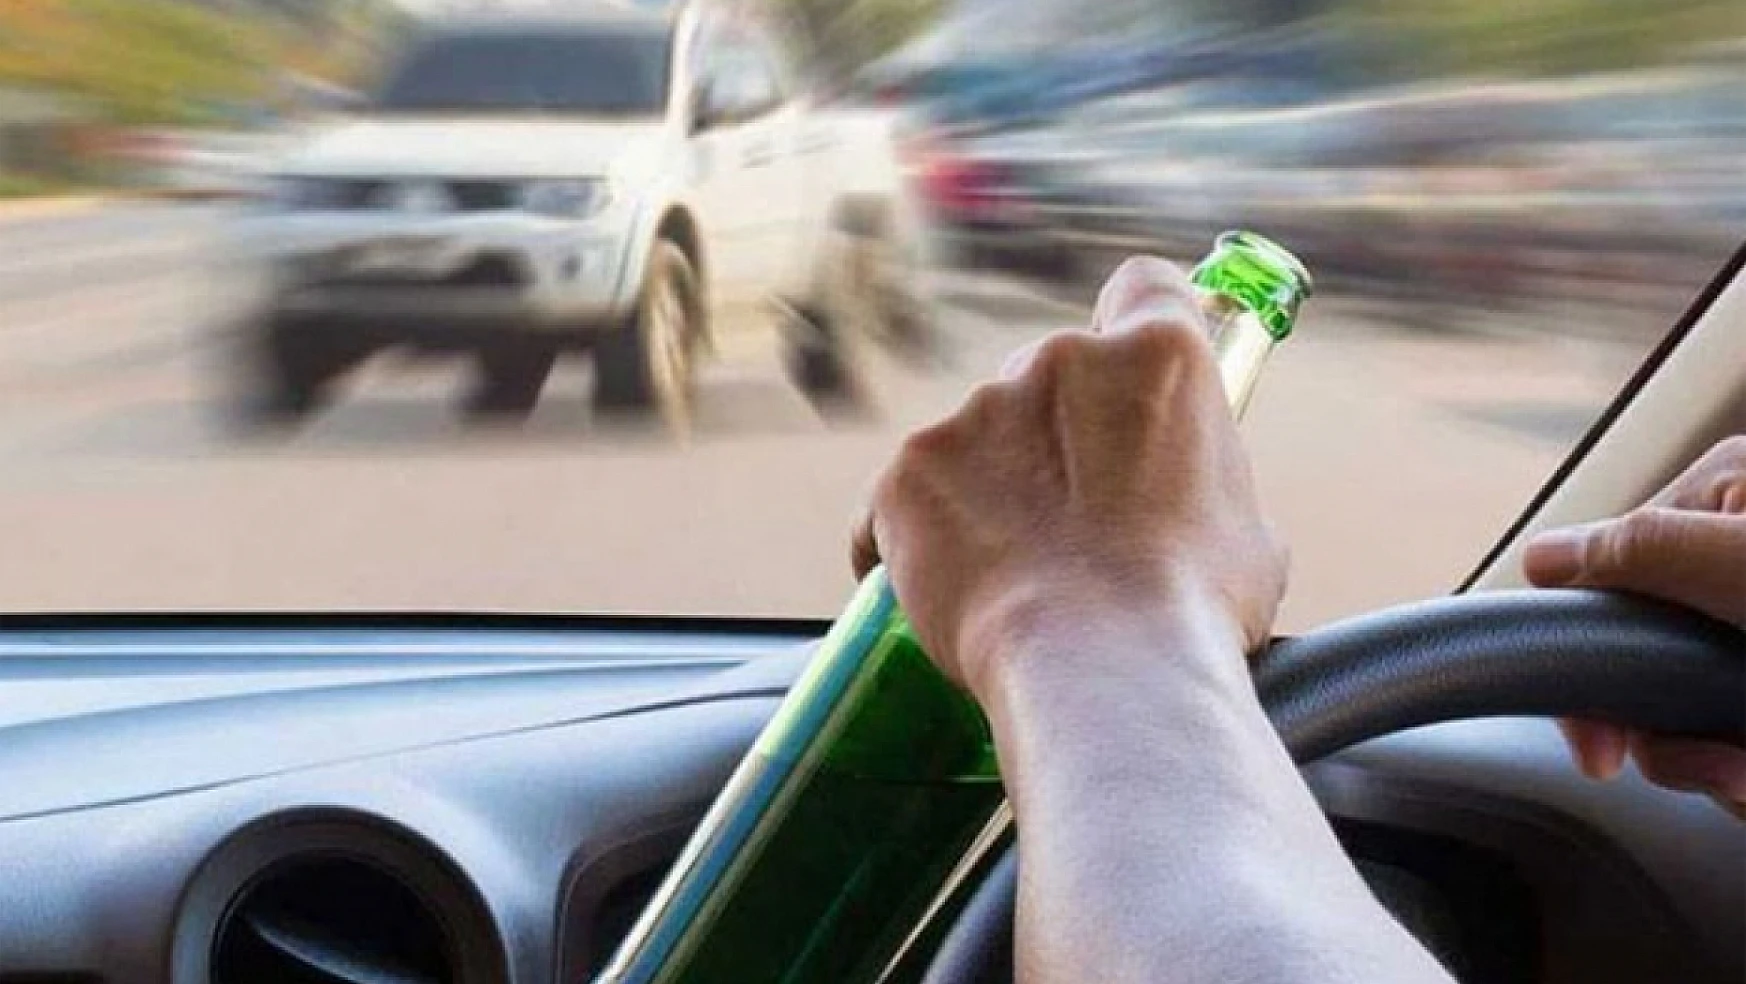 Alkol kullanan sürücülerin arabalarına el konulacak